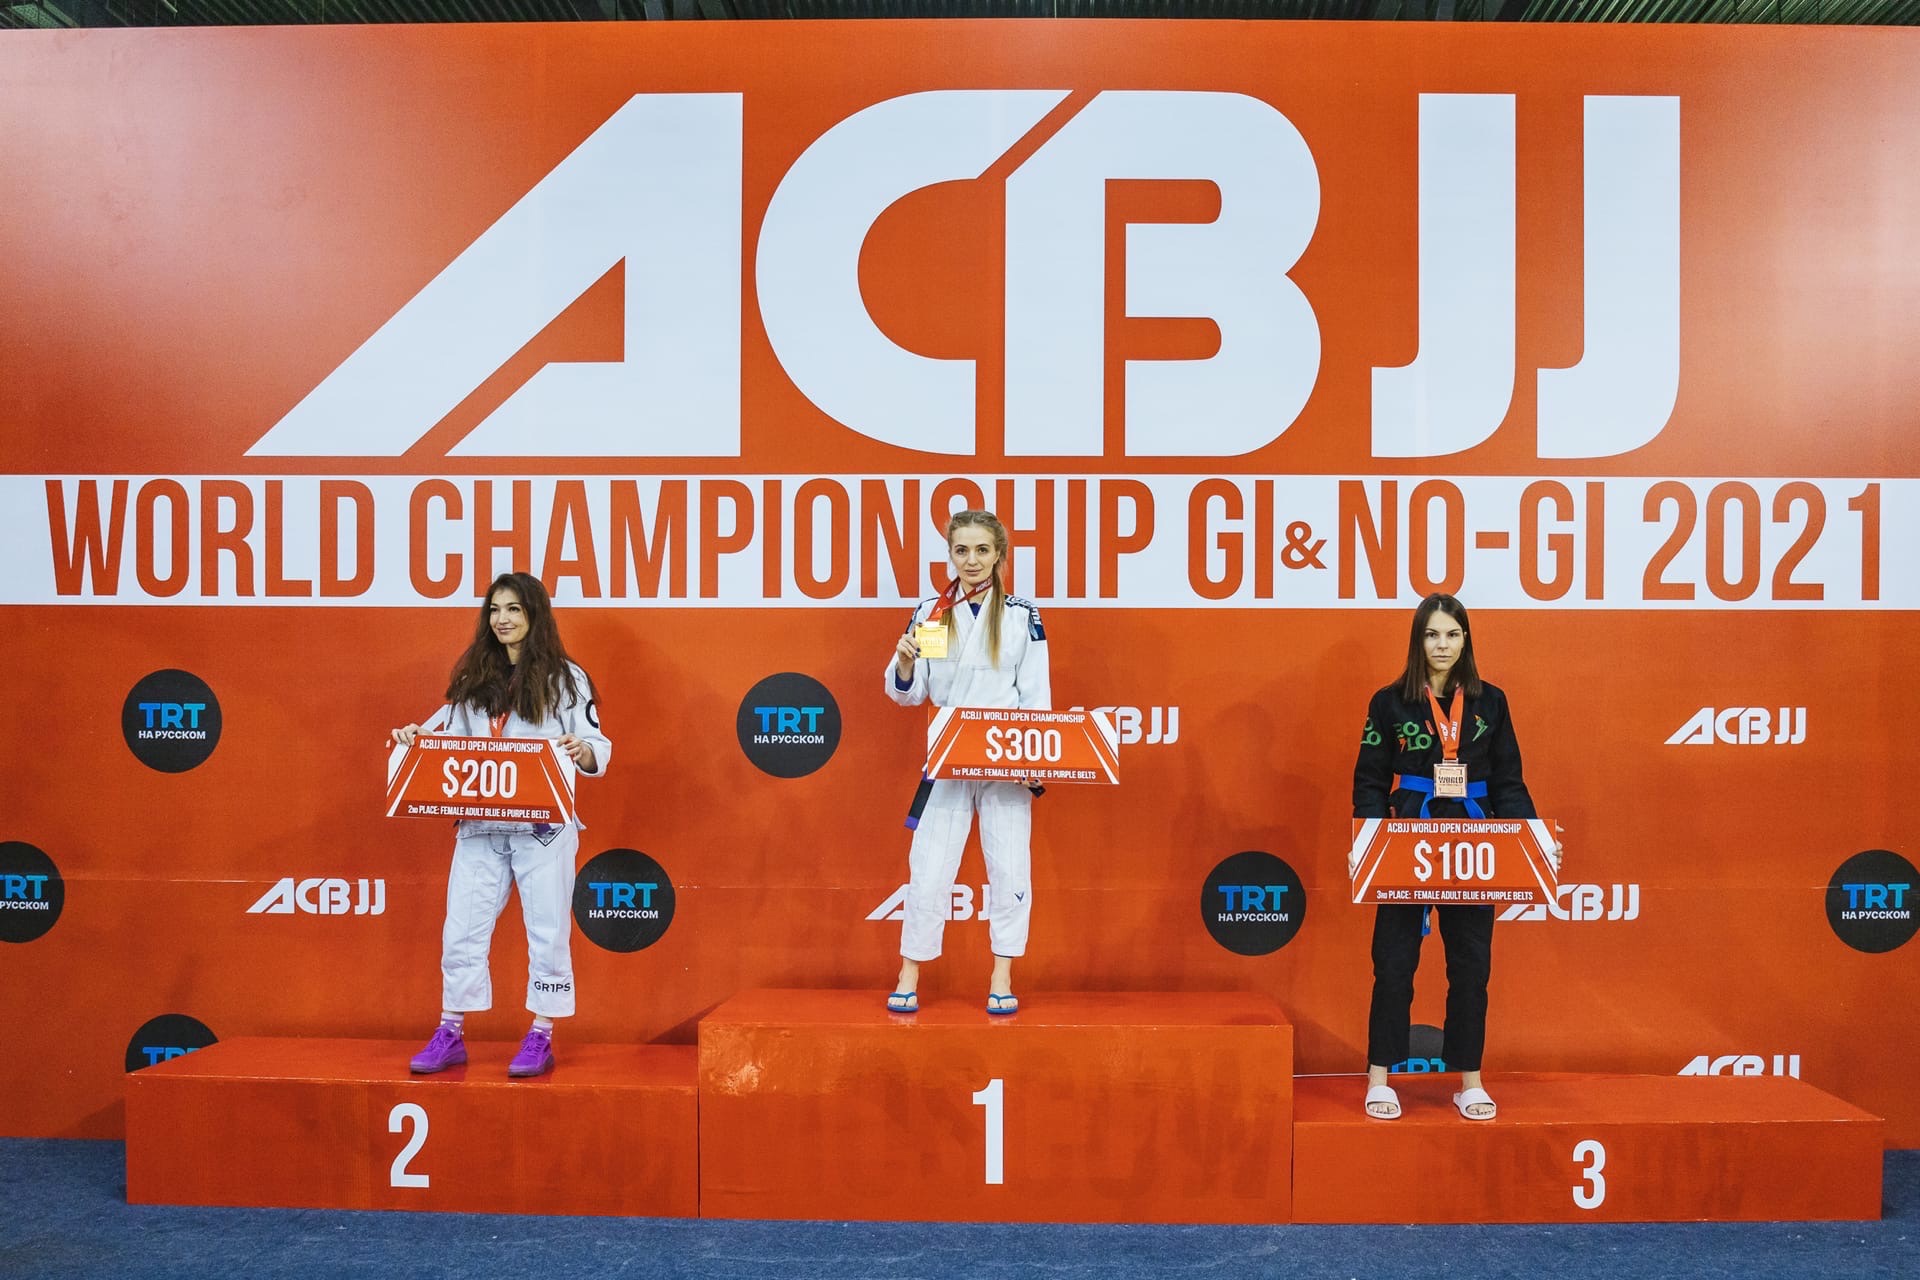 MCU student won awards at the World Jiu-Jitsu Championship